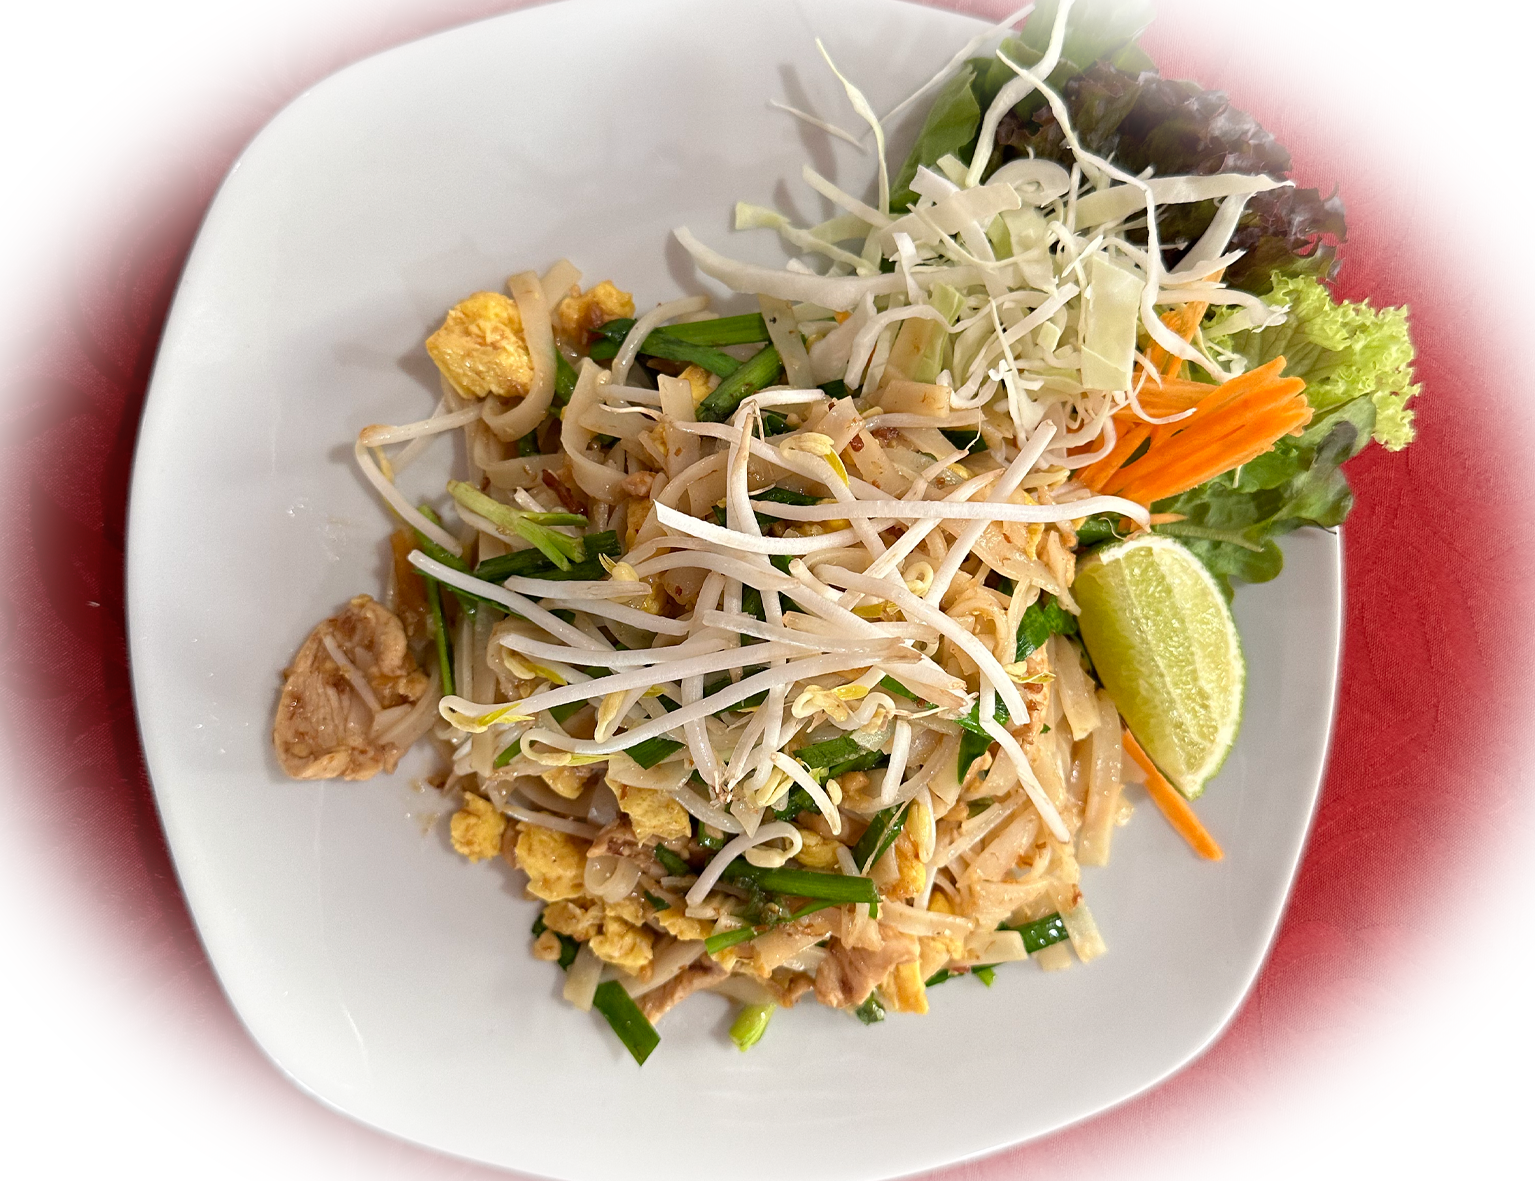 Köstliches Pad Thai, perfekt zubereitet mit einer reichhaltigen Mischung aus gebratenen Nudeln, fris